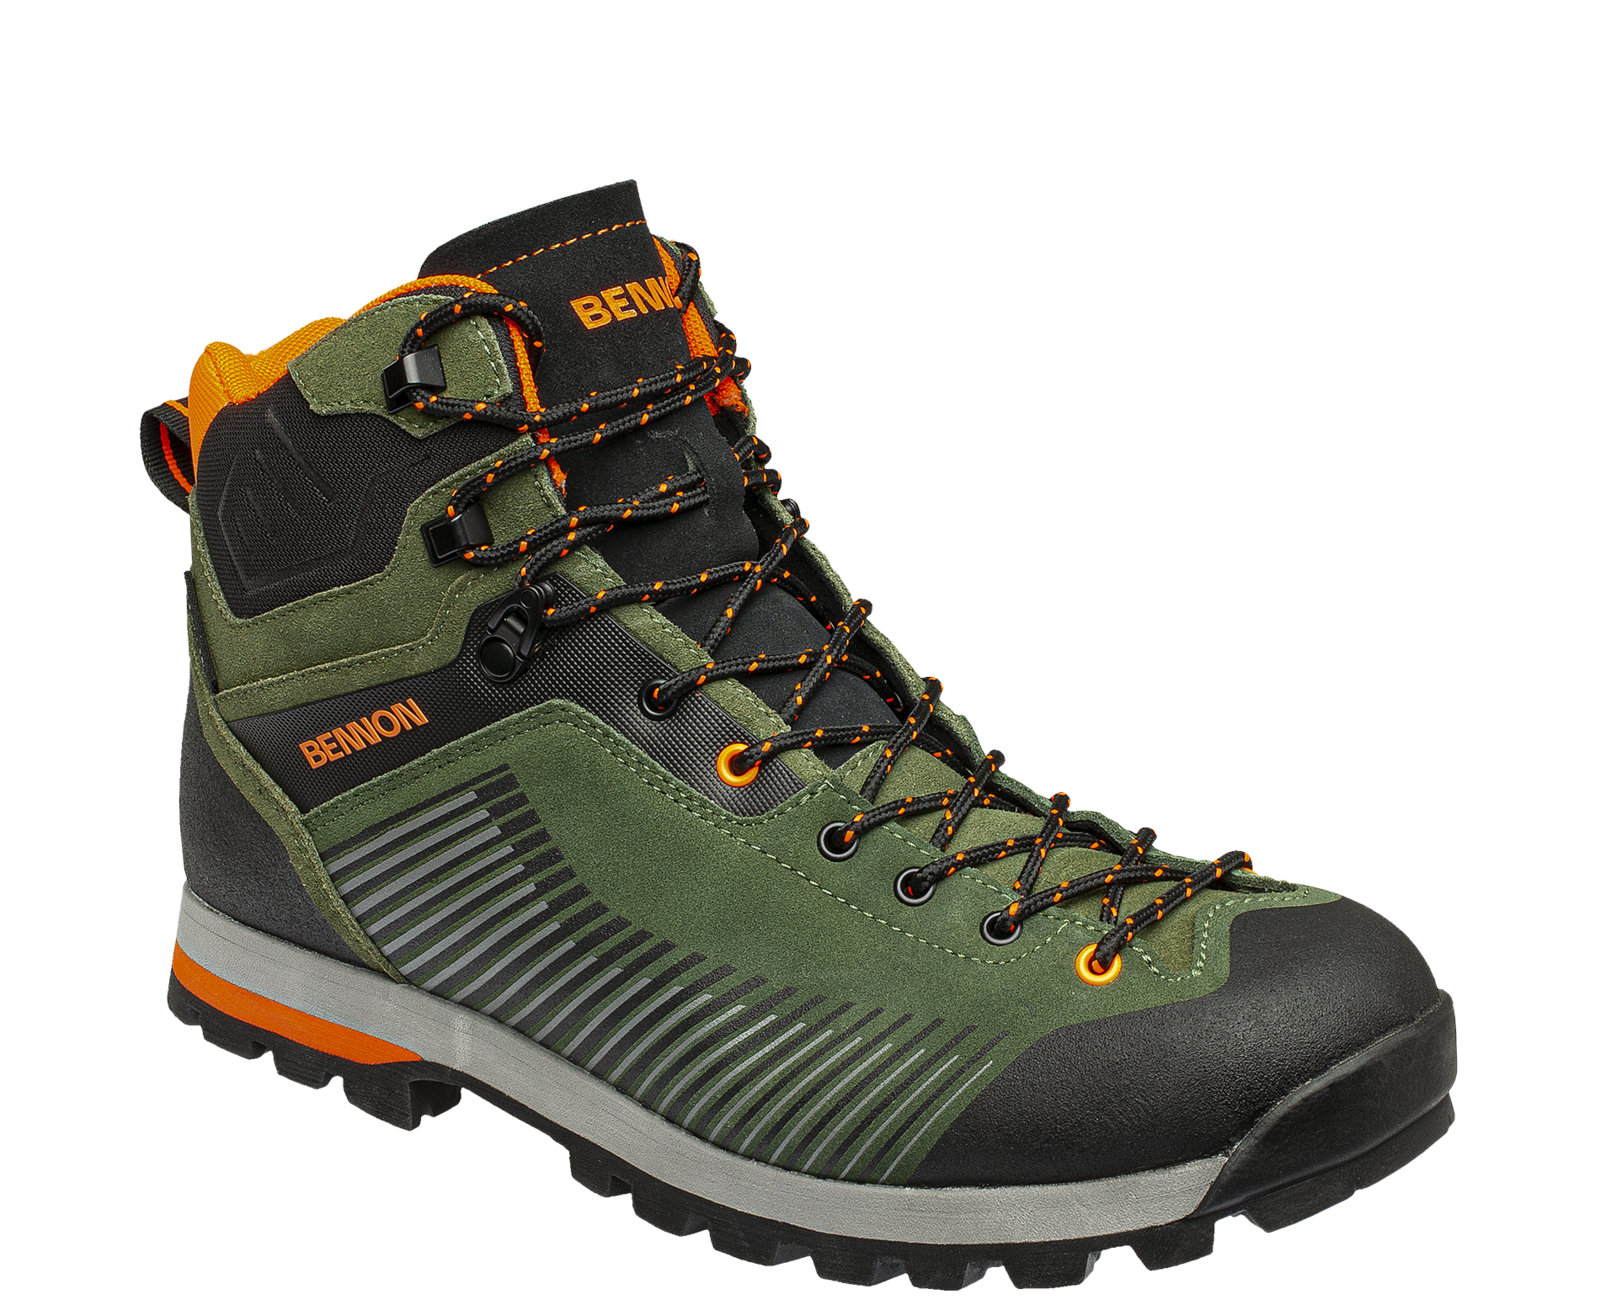 Kožená členková obuv s membránou Bennon Peak Green High - veľkosť: 39, farba: khaki/oranžová